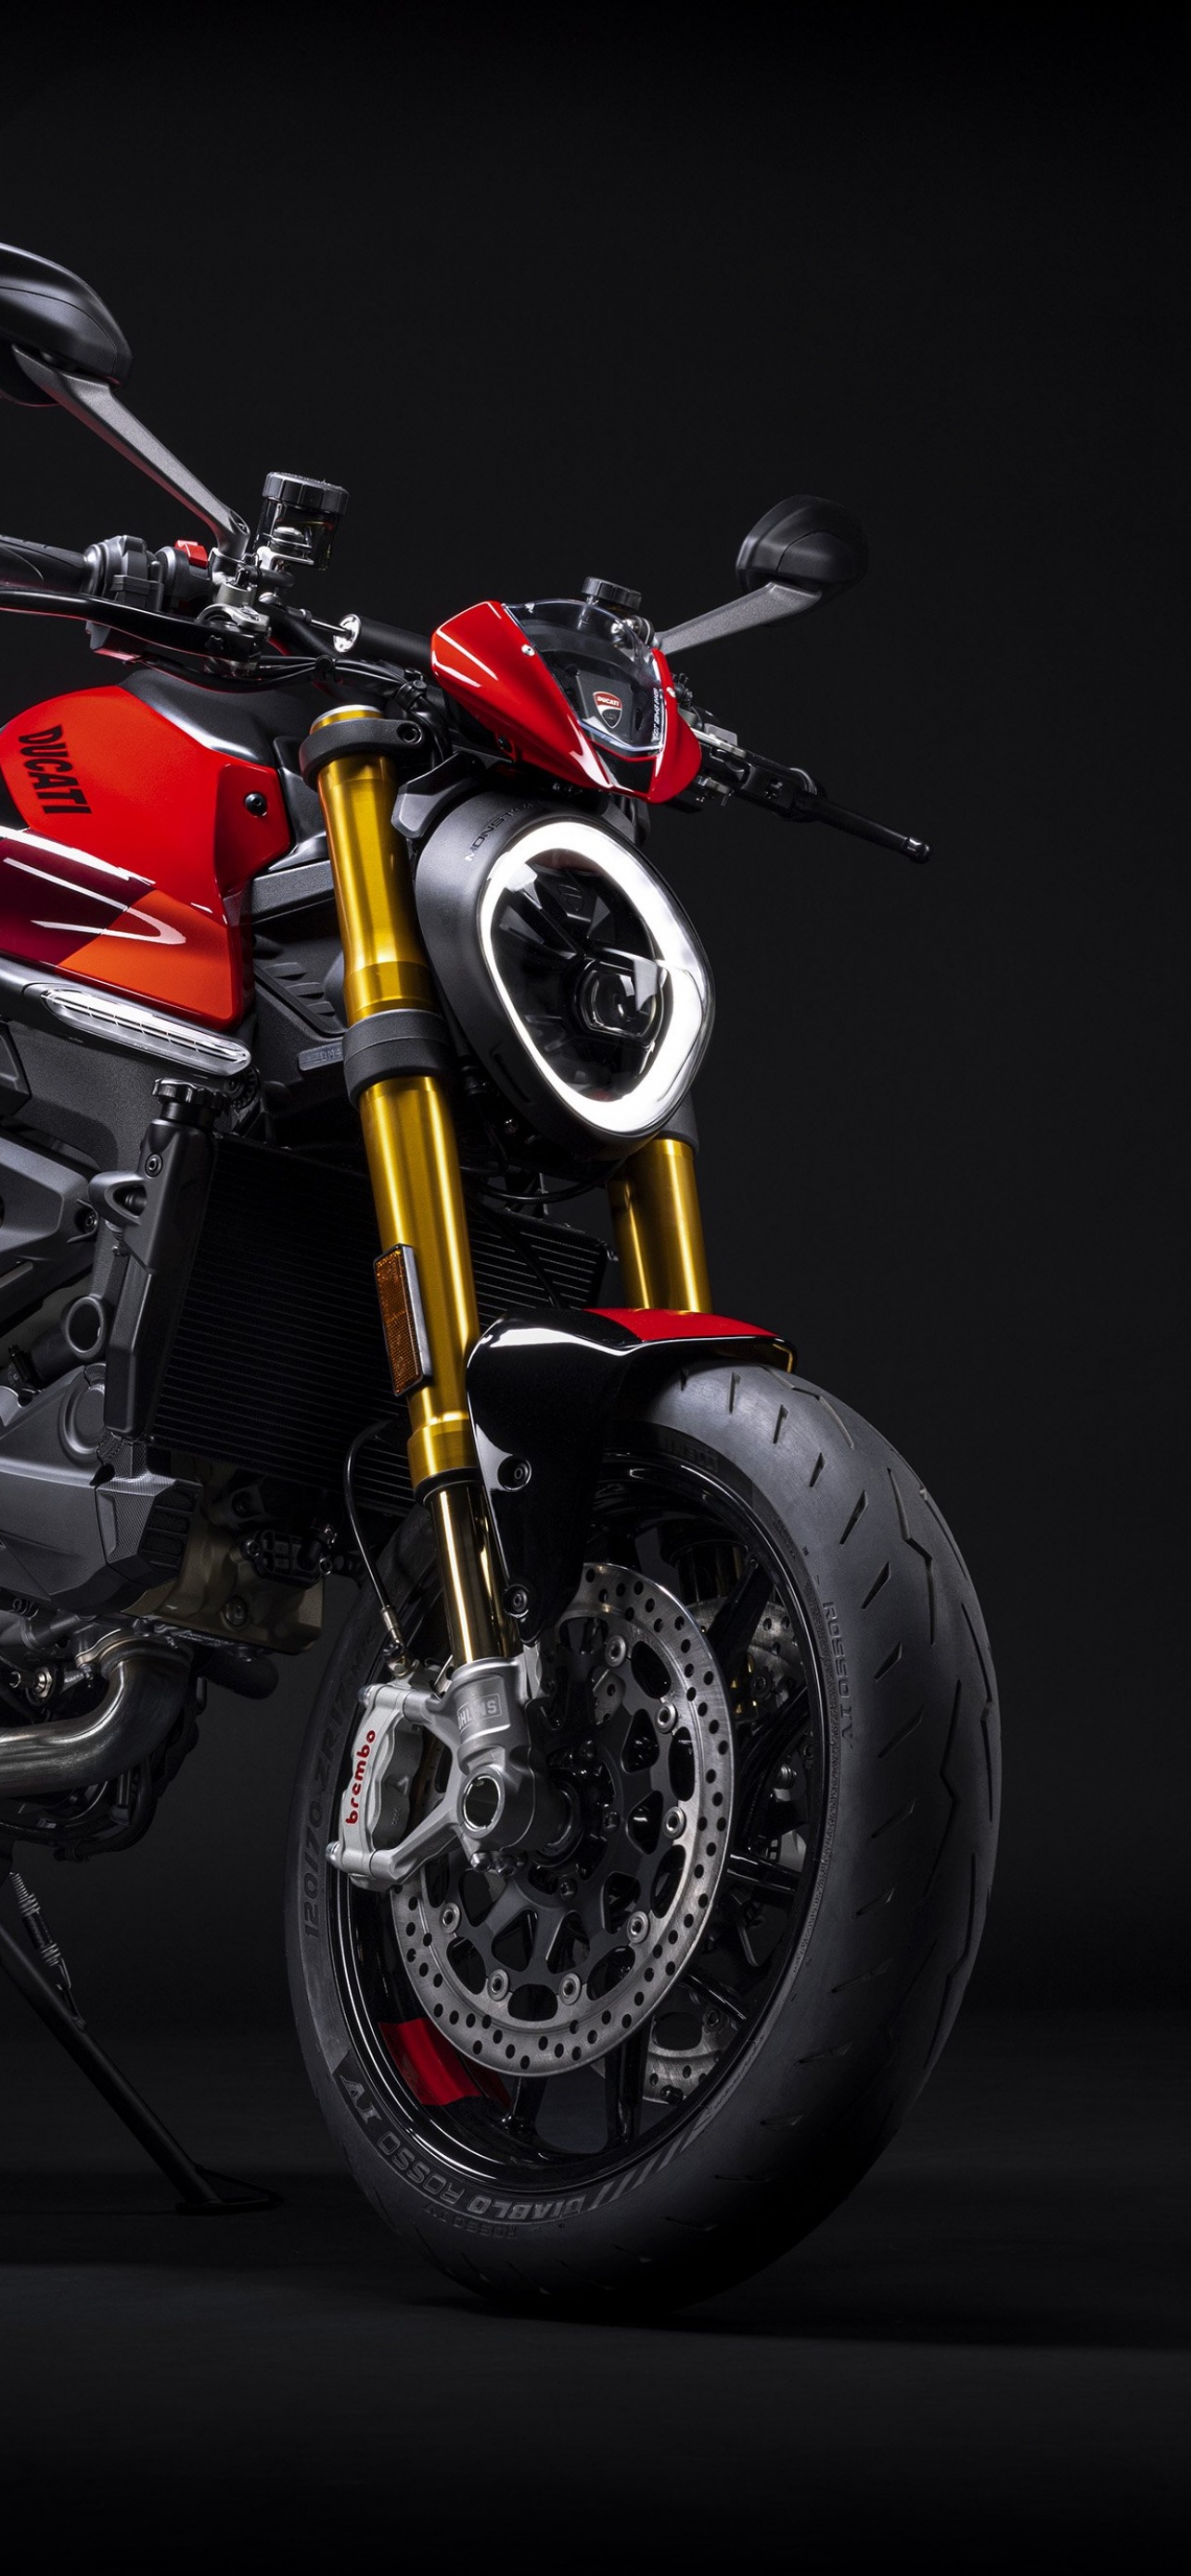 Ducati Monster SP: Khám phá sức mạnh và vẻ đẹp đầy cuốn hút của mẫu xe Ducati Monster SP thông qua các hình ảnh đẹp nhất. Sự kết hợp giữa công nghệ, nghệ thuật và hiệu năng của xe sẽ khiến bạn phải trầm trồ và thích thú không ngừng. Đến và tận hưởng cảm giác lái thật hoàn hảo của mẫu xe này!